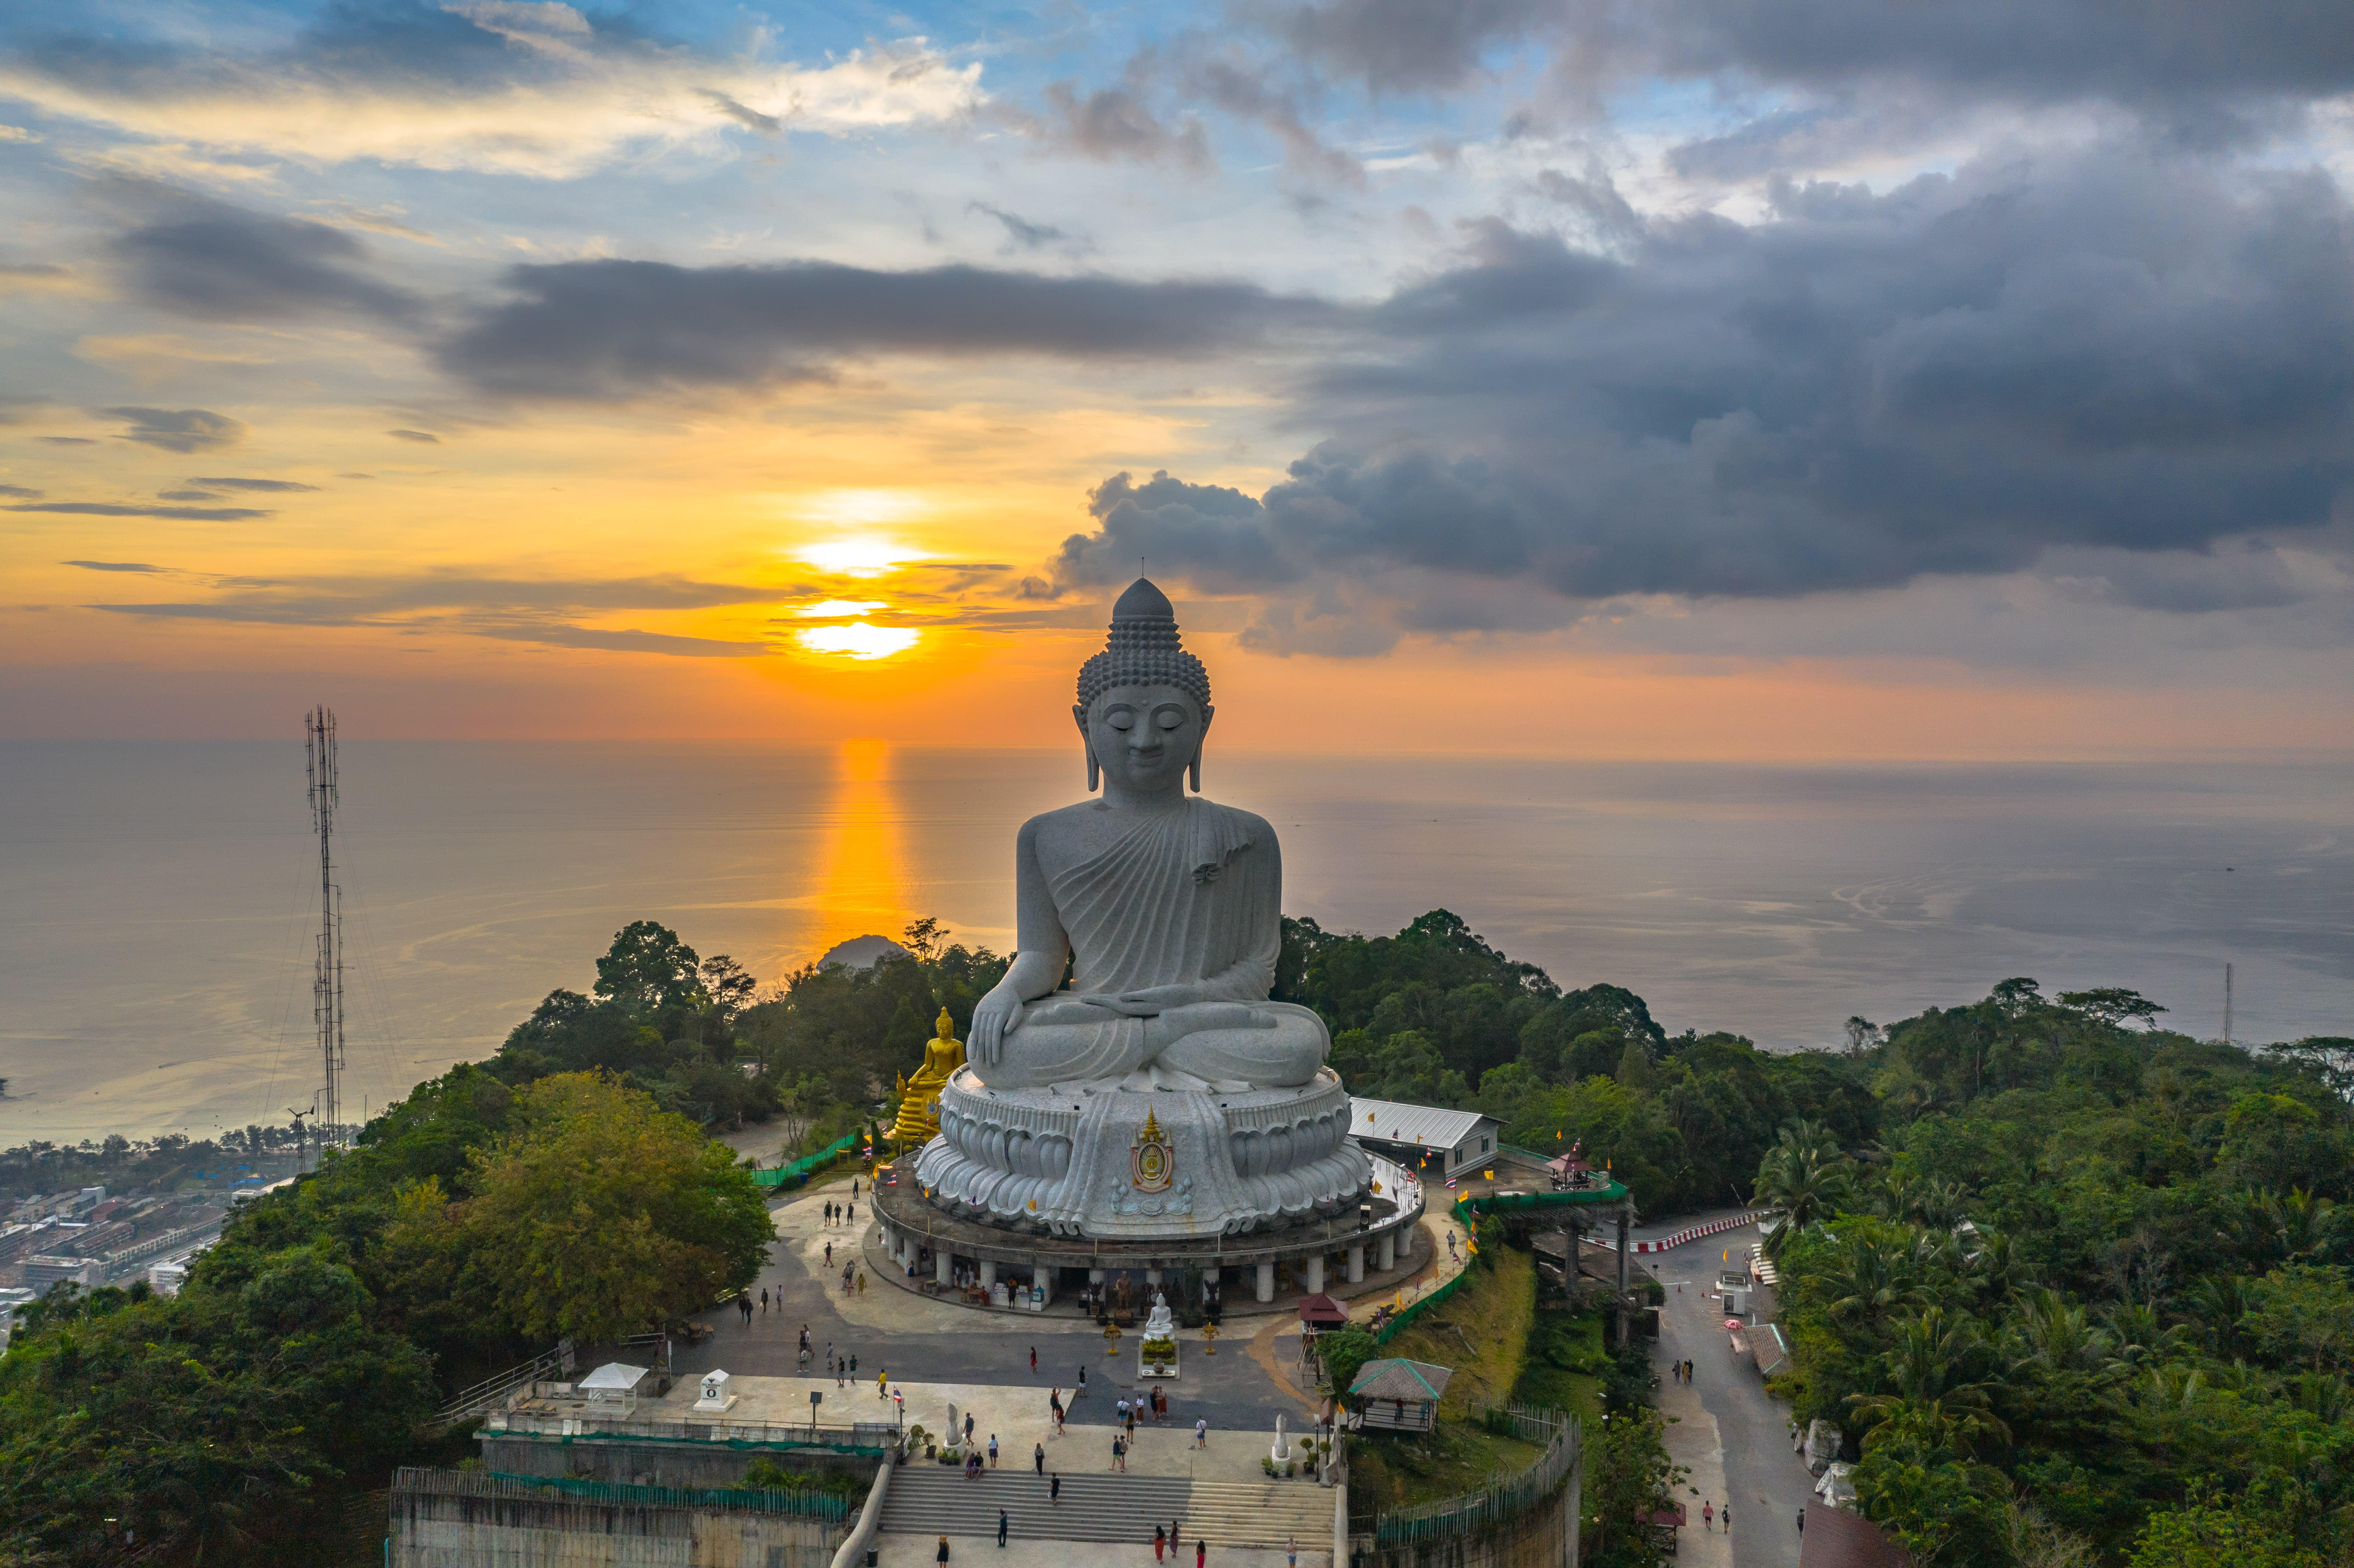 Beautiful view of Big Buddha of Phuket